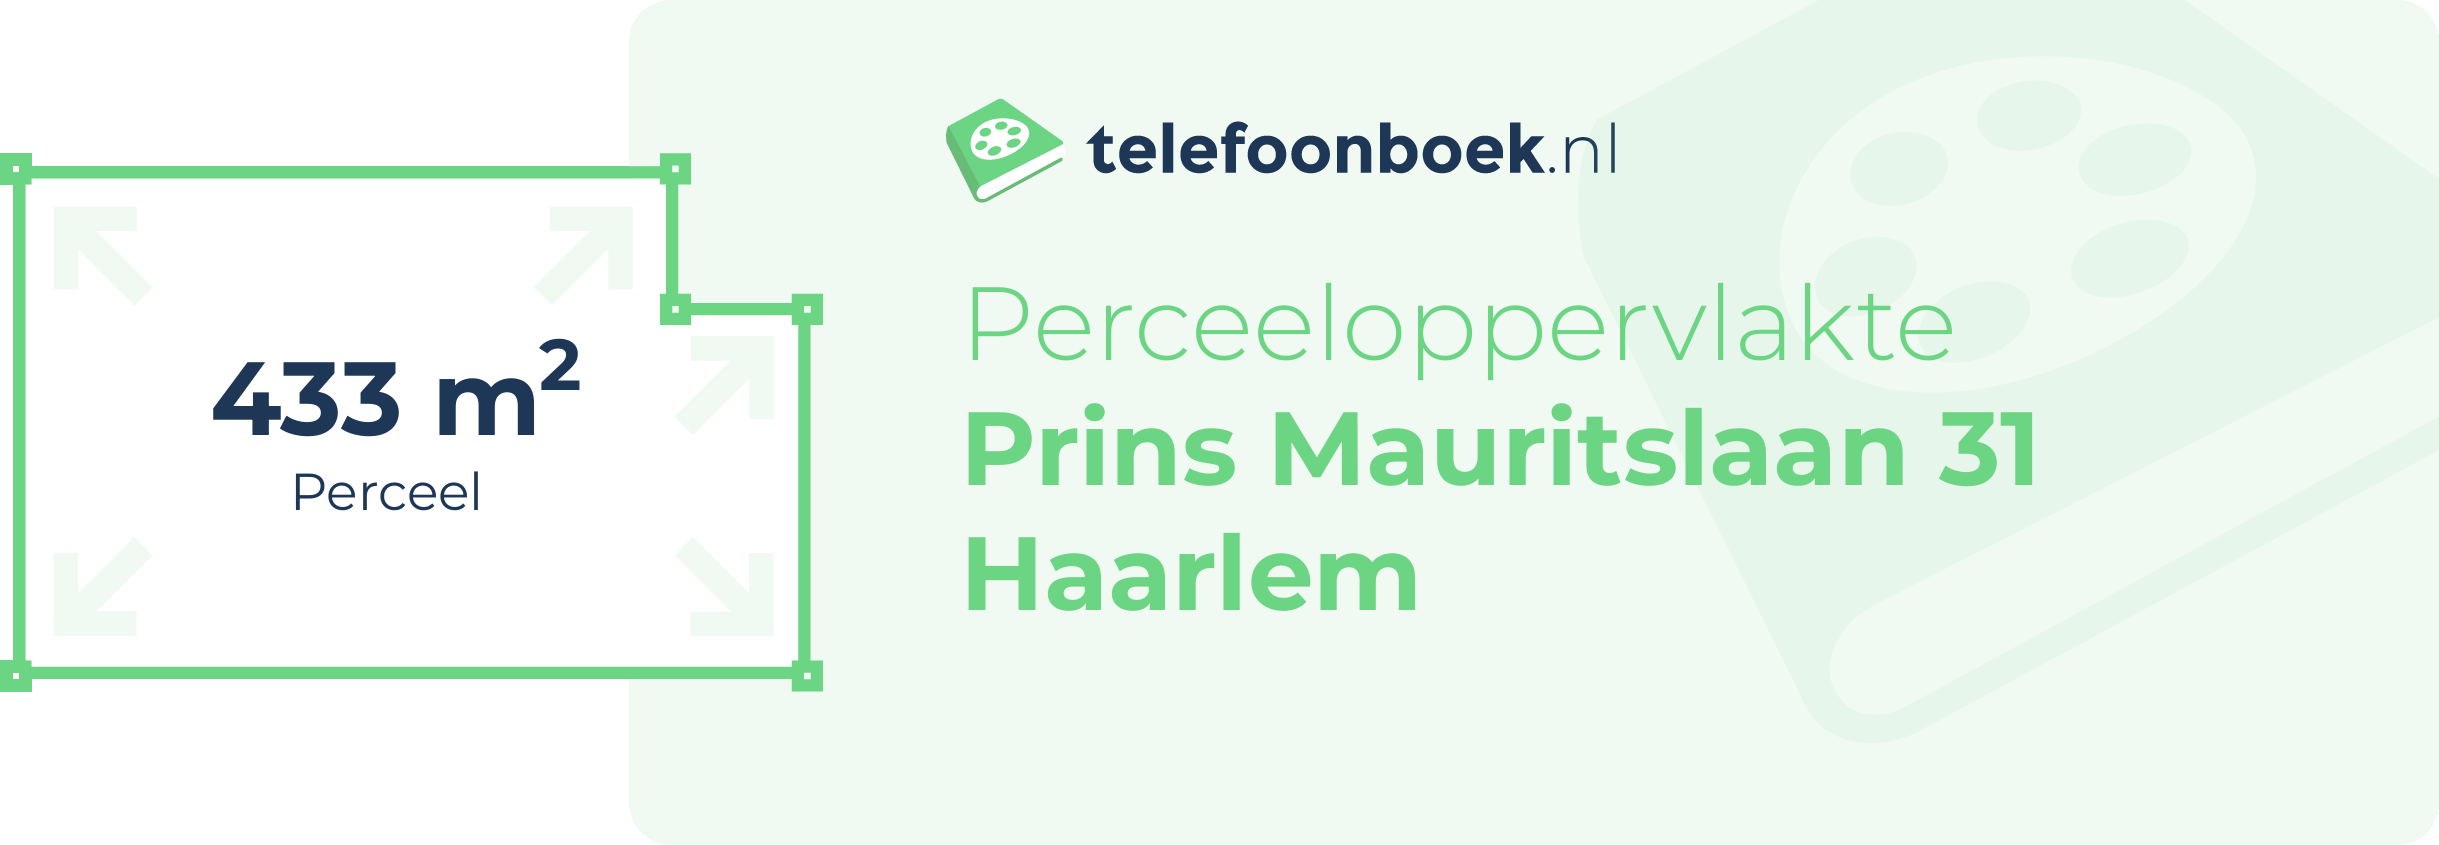 Perceeloppervlakte Prins Mauritslaan 31 Haarlem